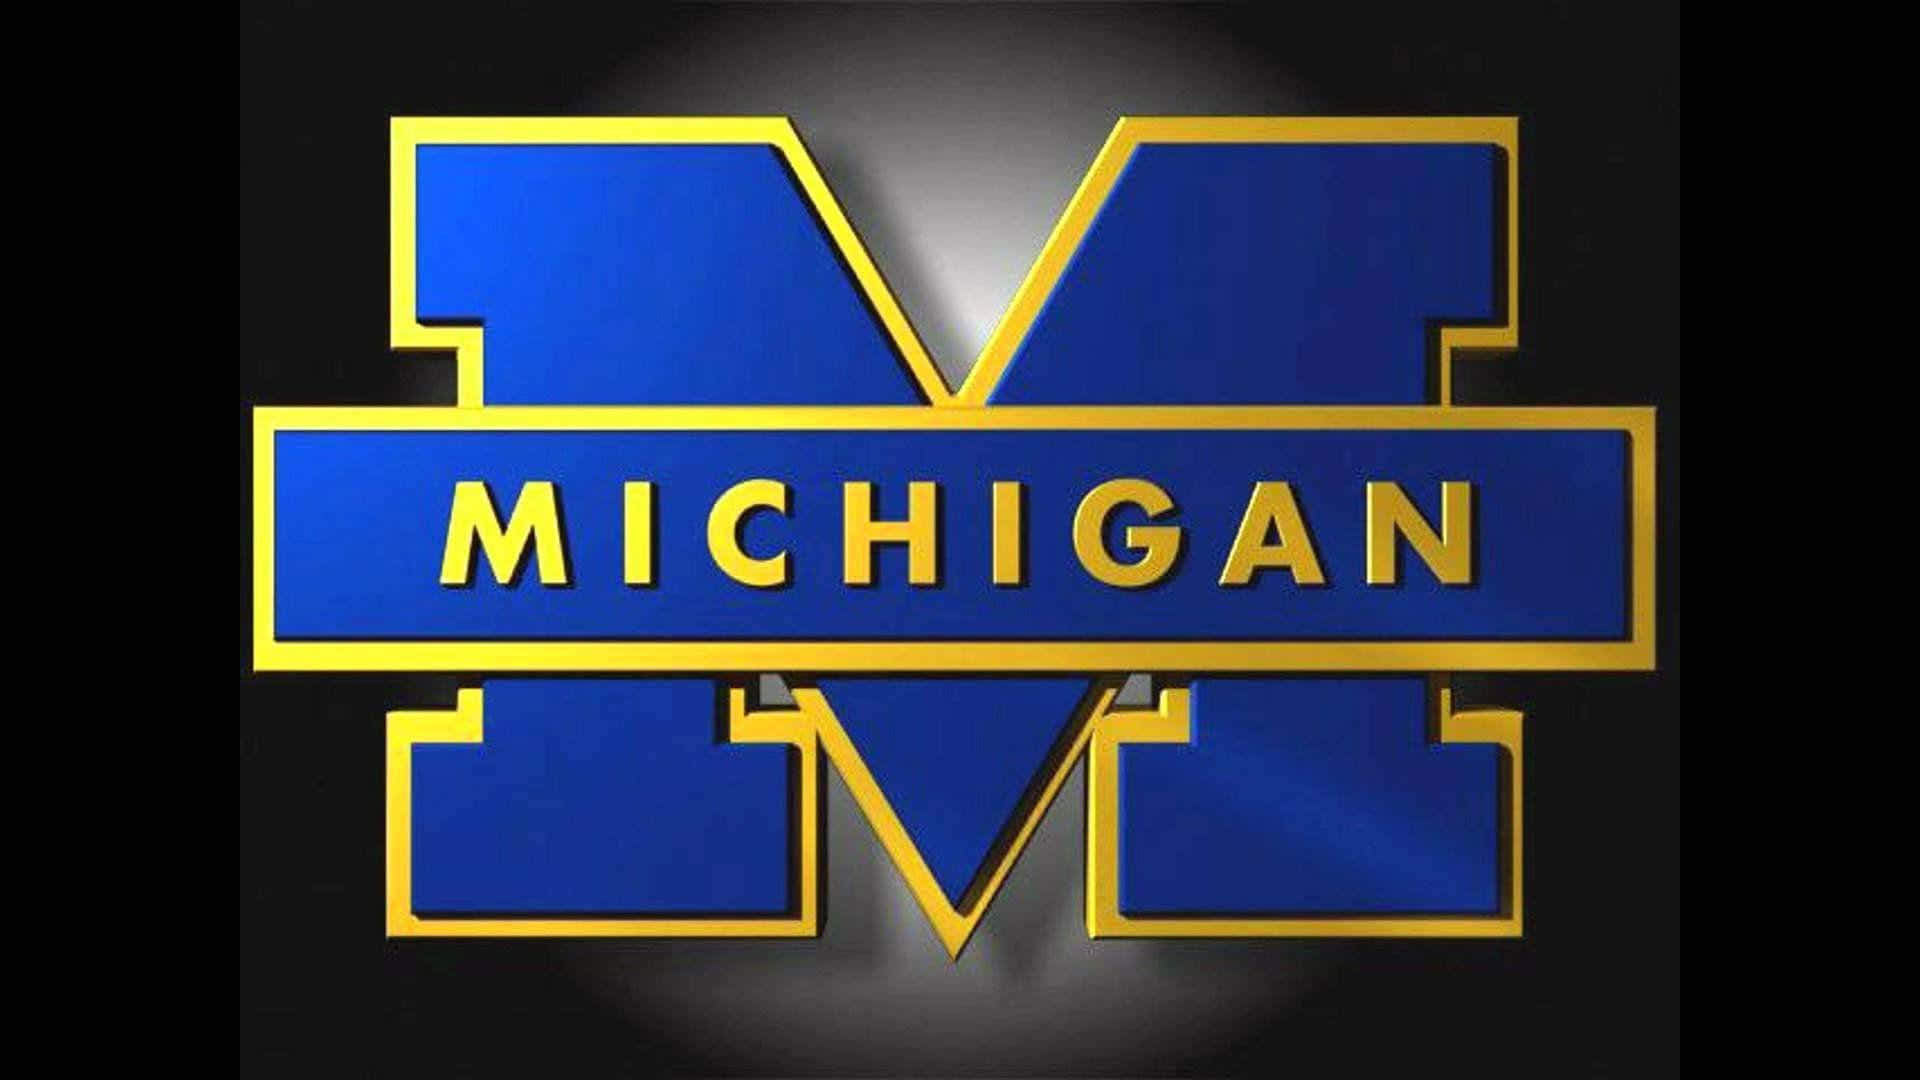 Logotipode Michigan Sobre Un Fondo Negro Fondo de pantalla